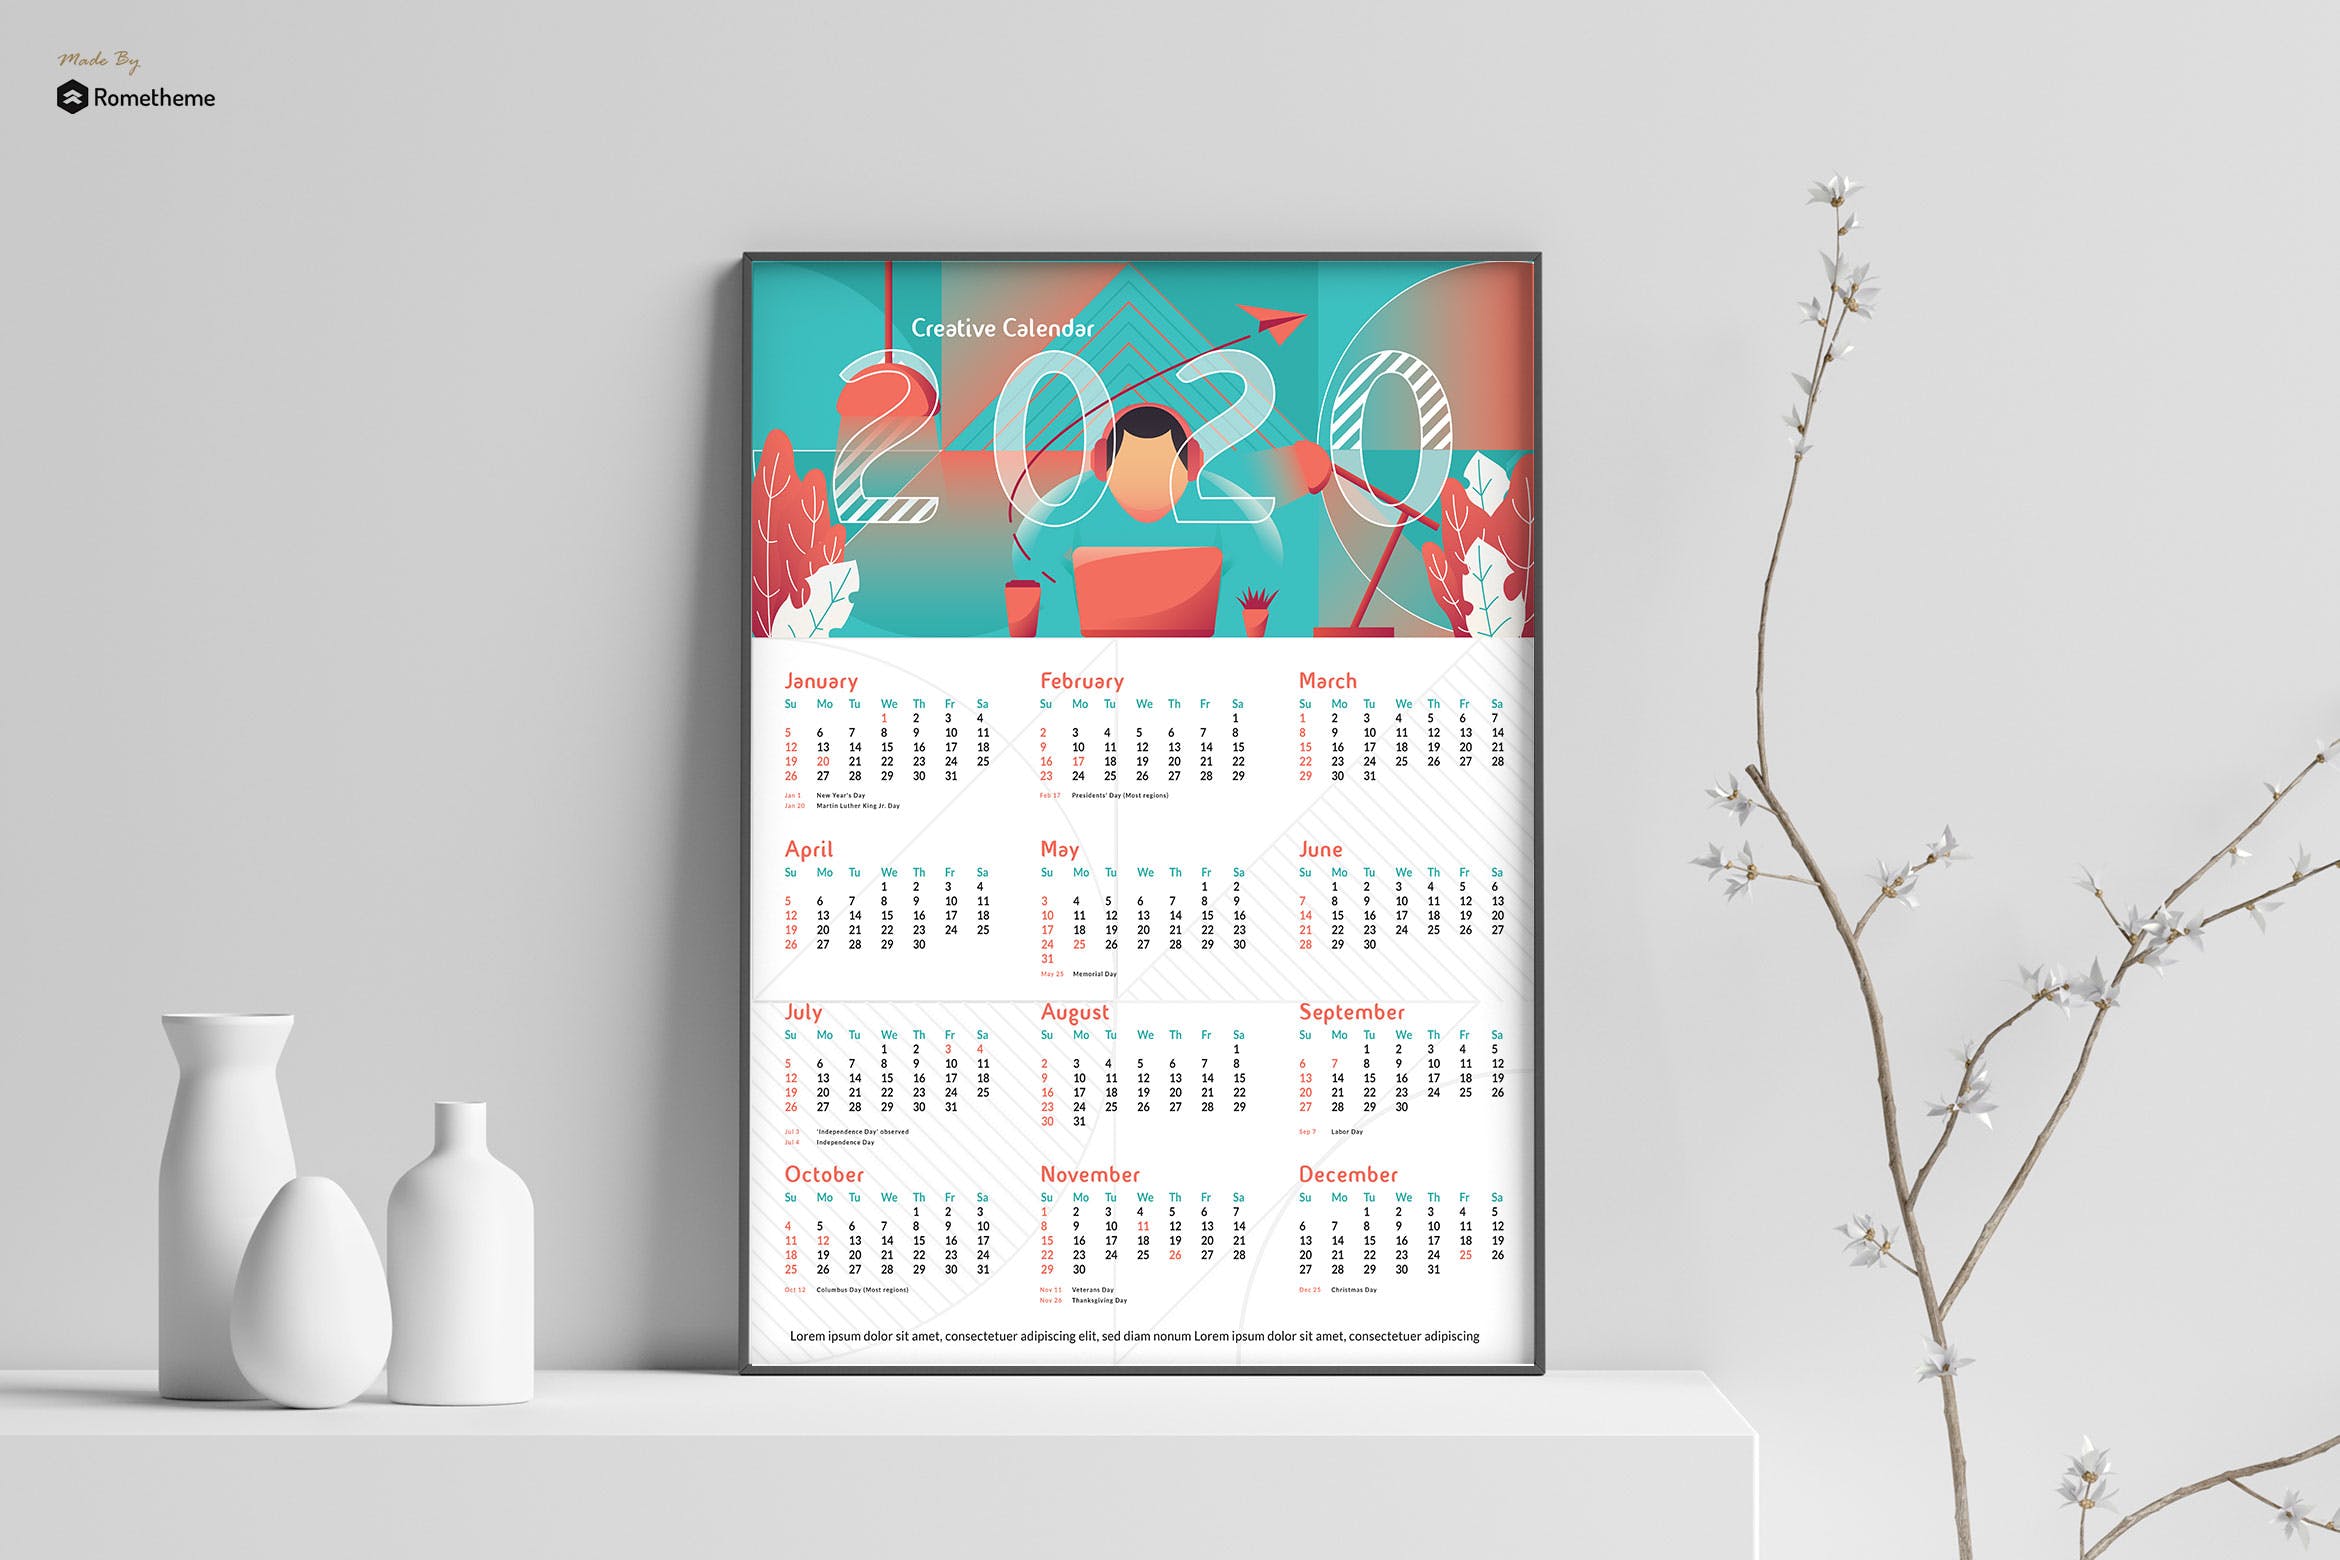 2020年创意单页日历设计模板 Creative Calendar 2020 GR插图